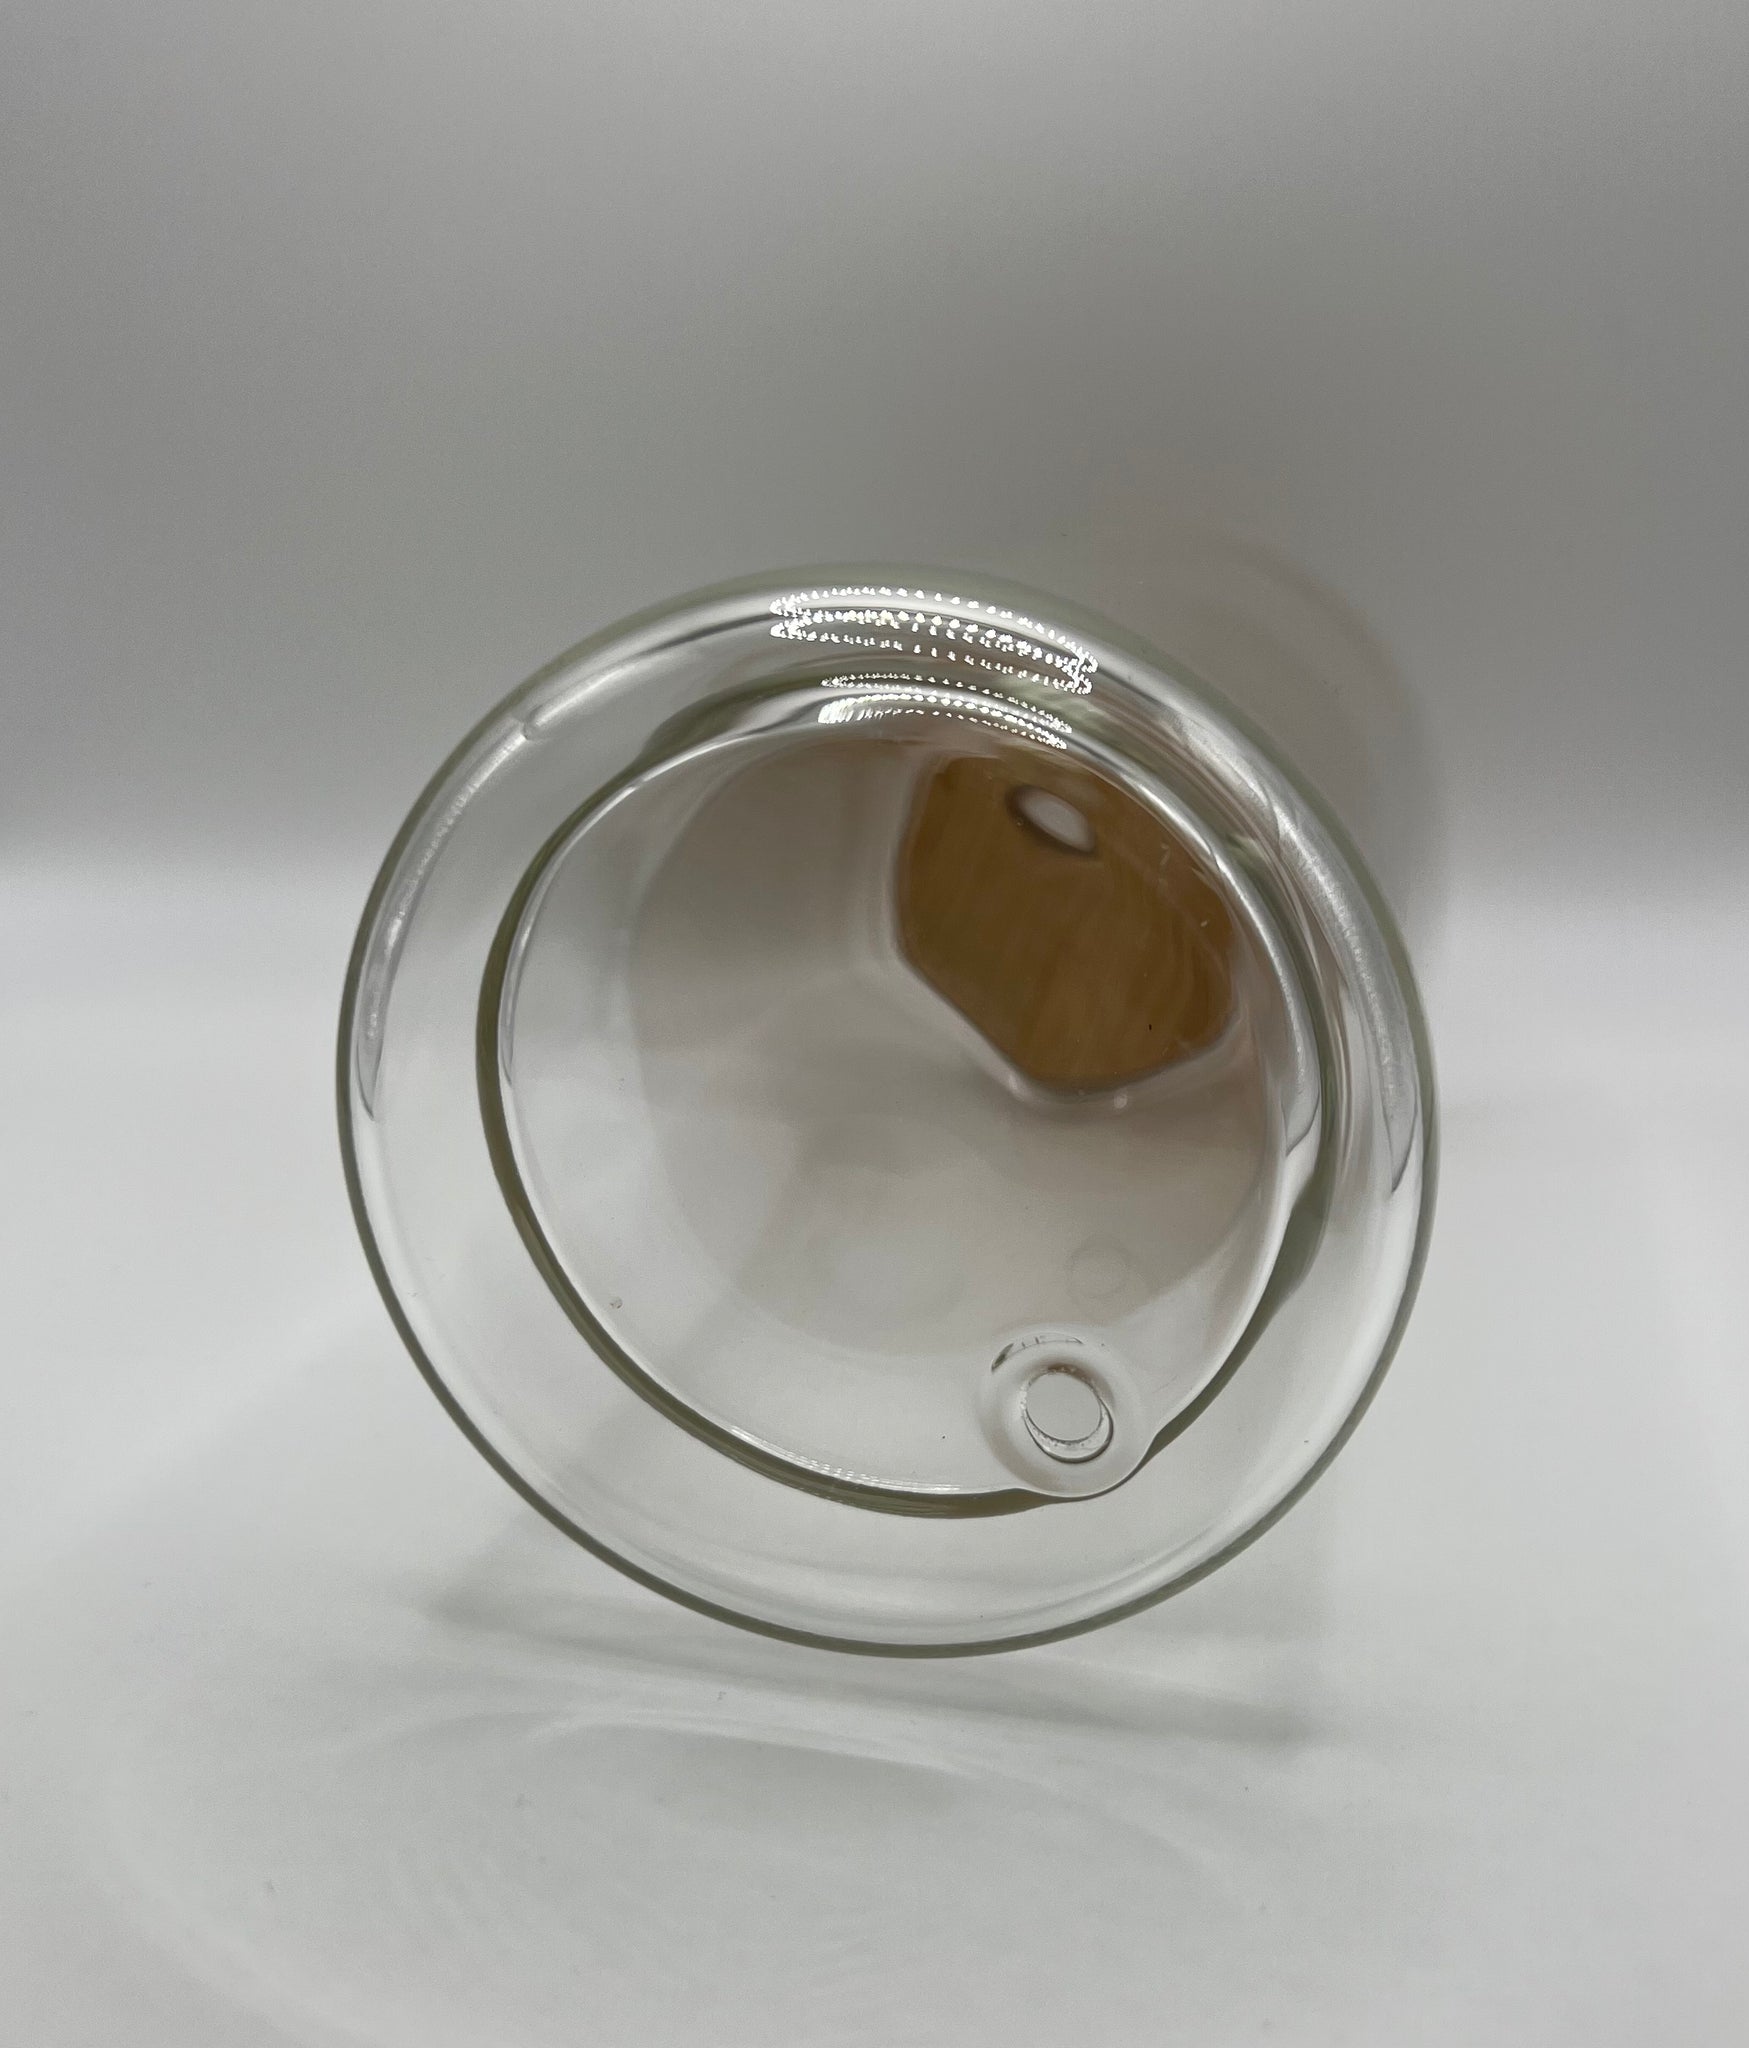 16oz Snow Globe double walled glass tumbler, vasos para sublimar